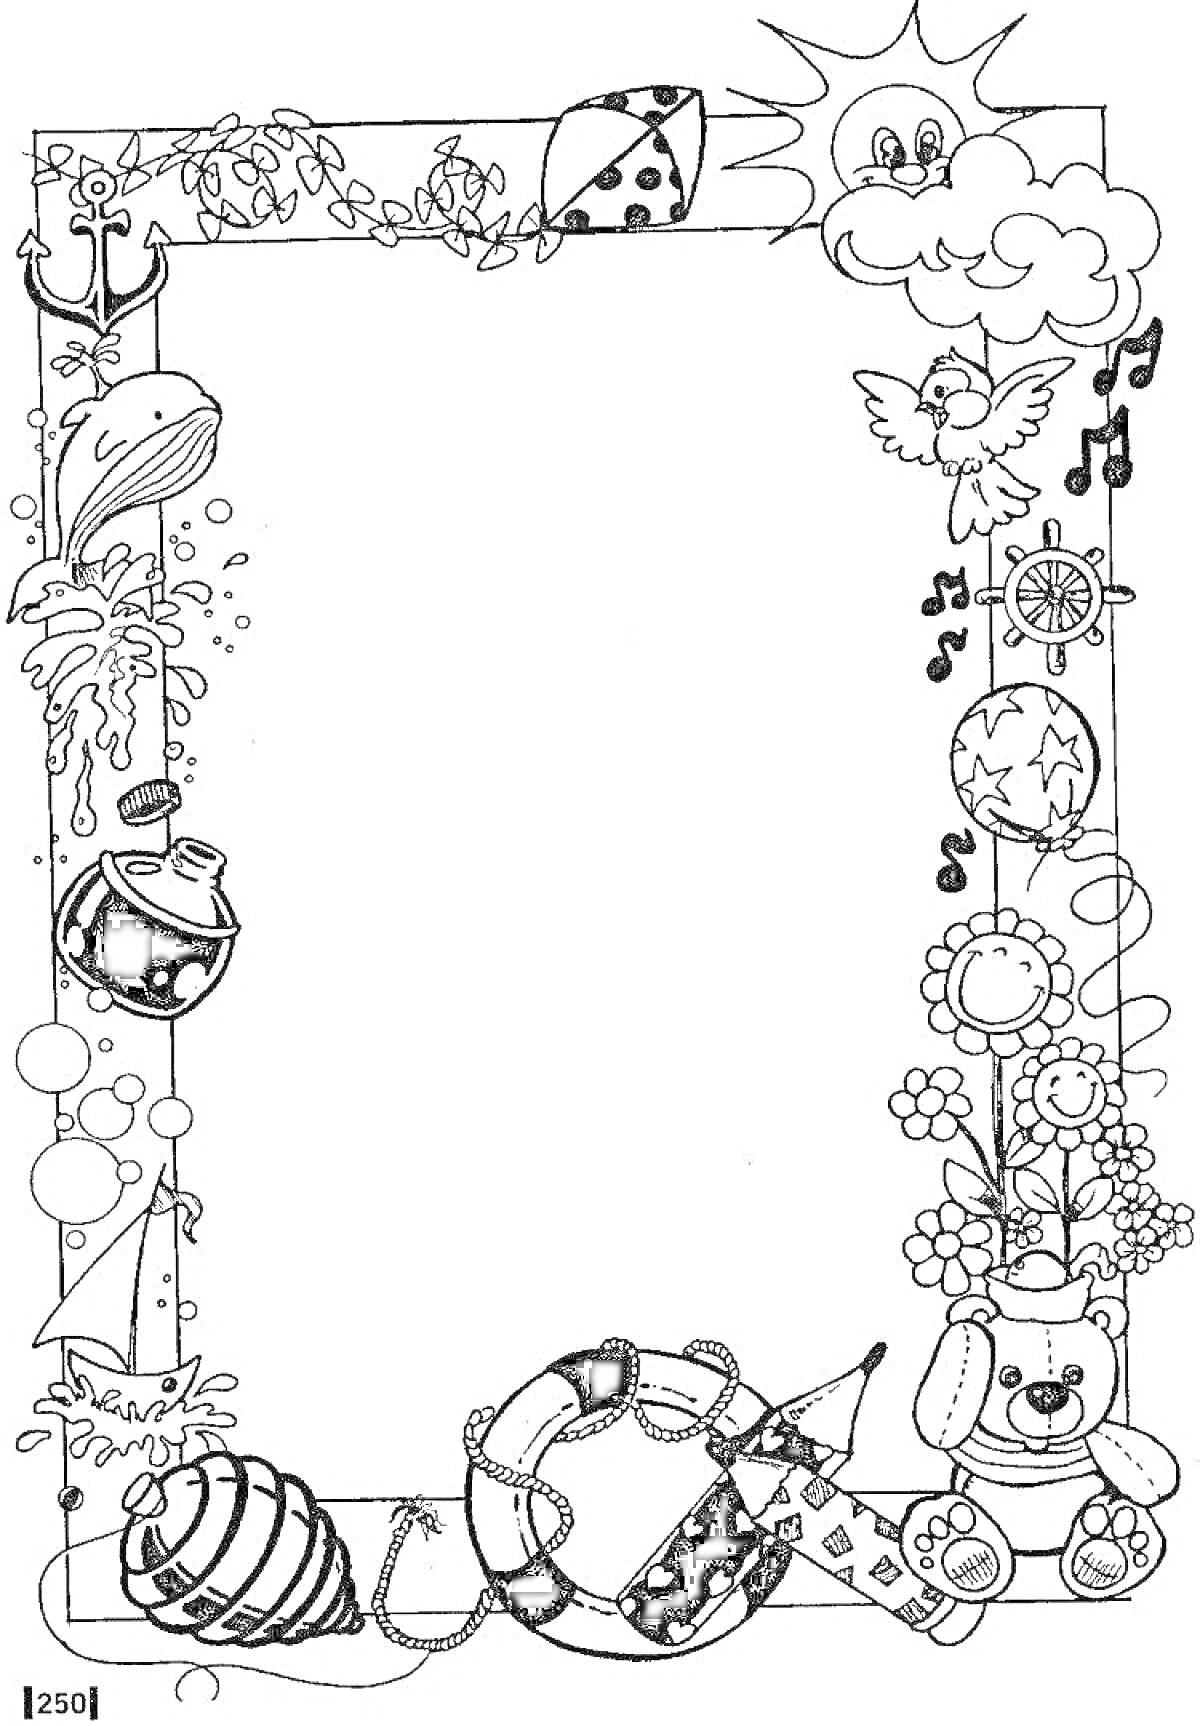 Раскраска Новогодняя рамка для текста с новогодними игрушками, цветами, бабочками, елкой, птицей, песочными часами, мишкой, солнышком и медузой.